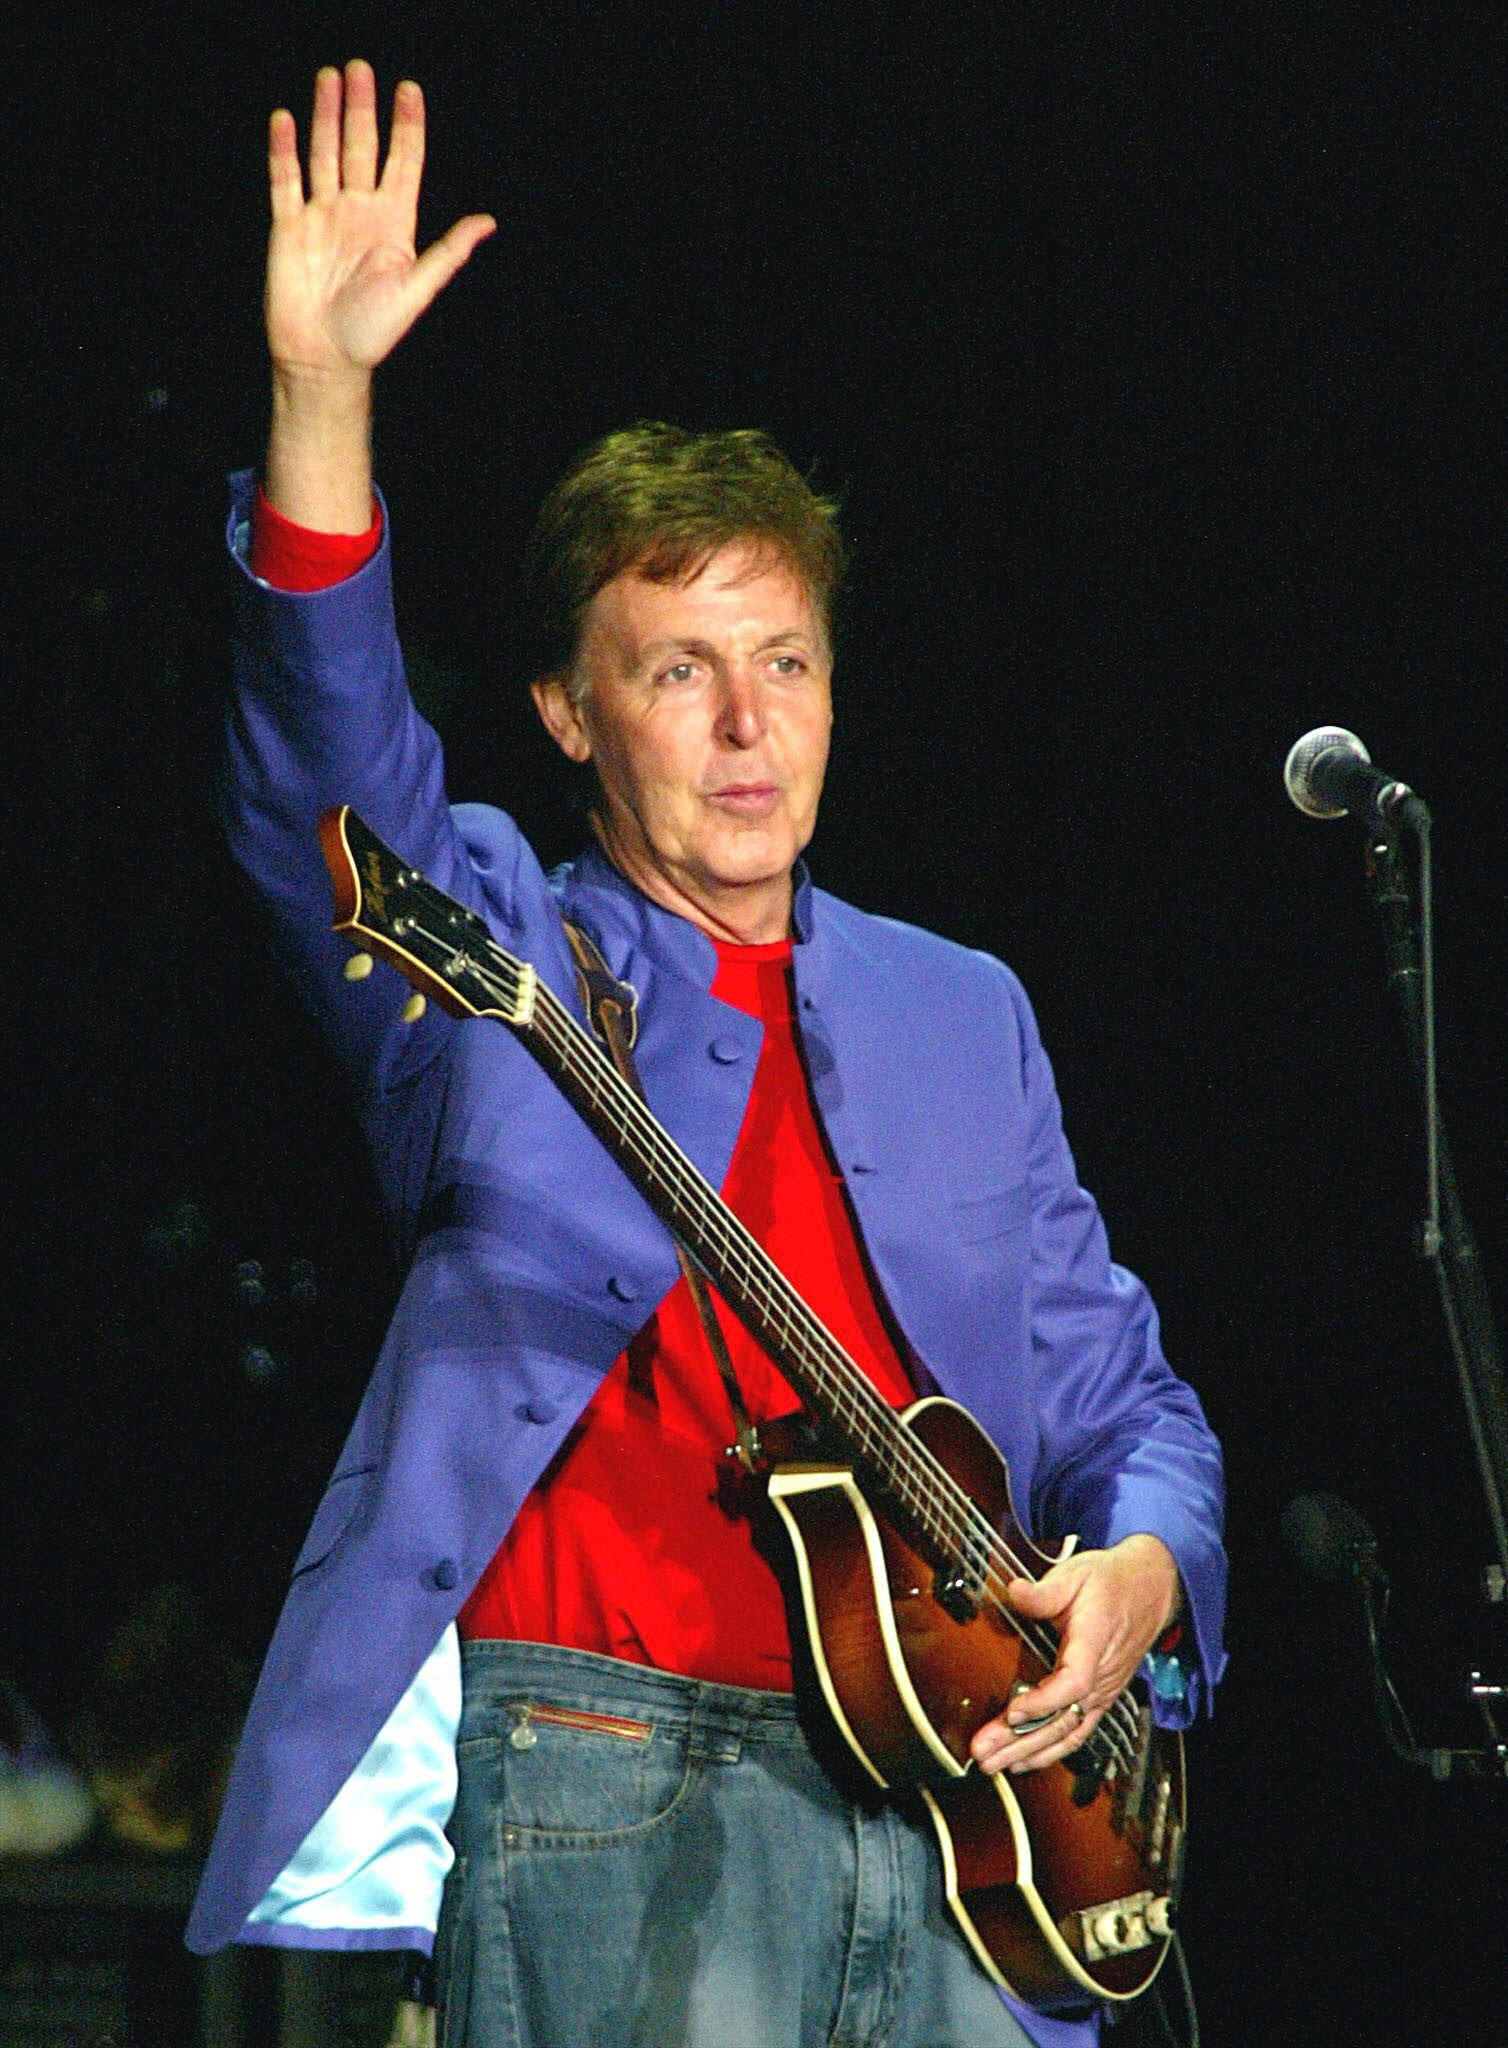 Paul McCartney actuarà a l'Estadi Olímpic de Barcelona el 17 de juny